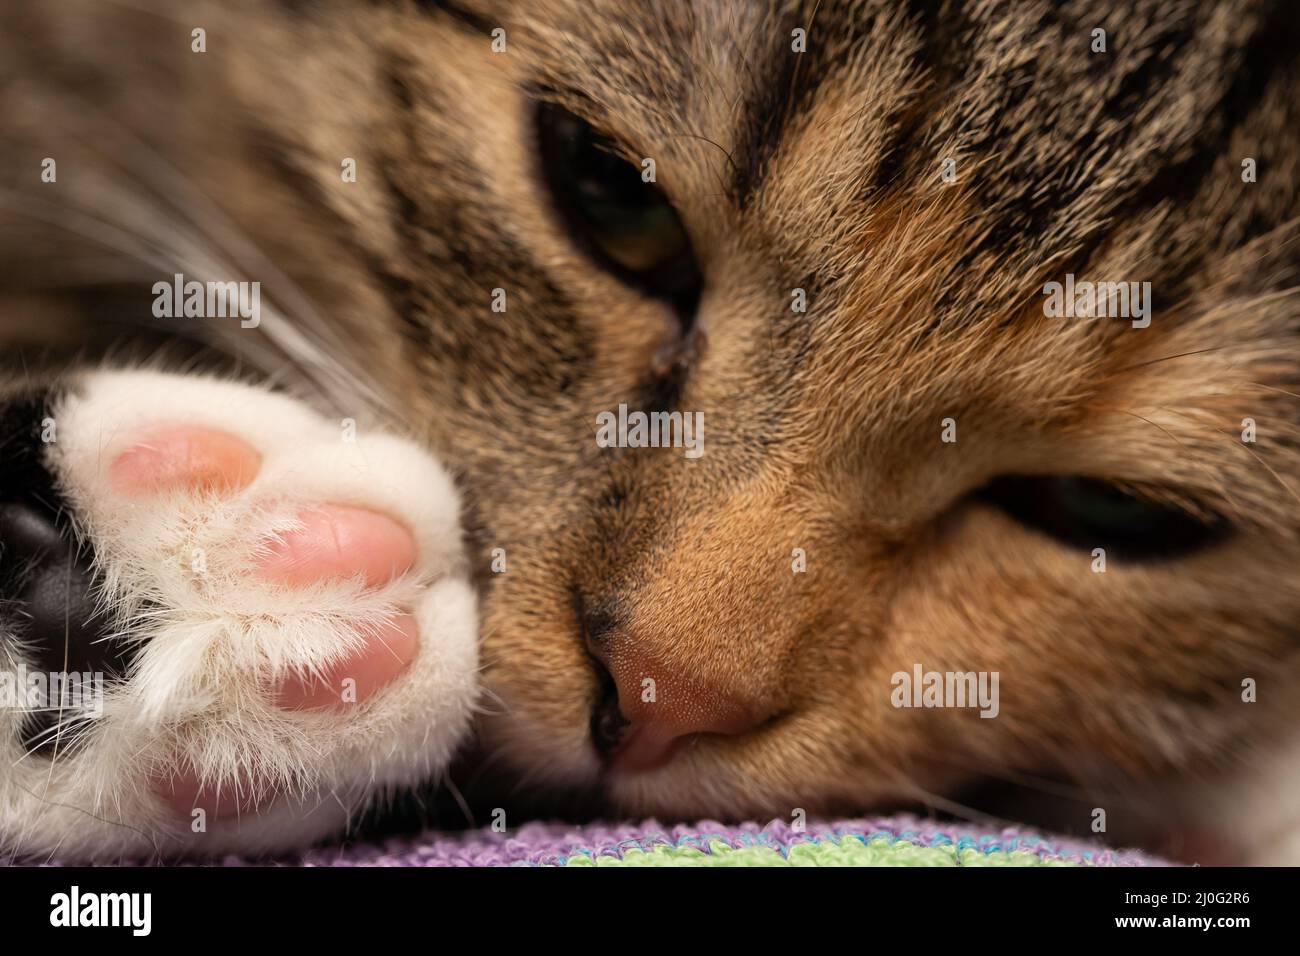 Una foto de cerca de ella-gato durmiendo y acostado en su cama. Ojos cerrados y una nariz dulce y almohadillas de la pata trasera del gatito Foto de stock